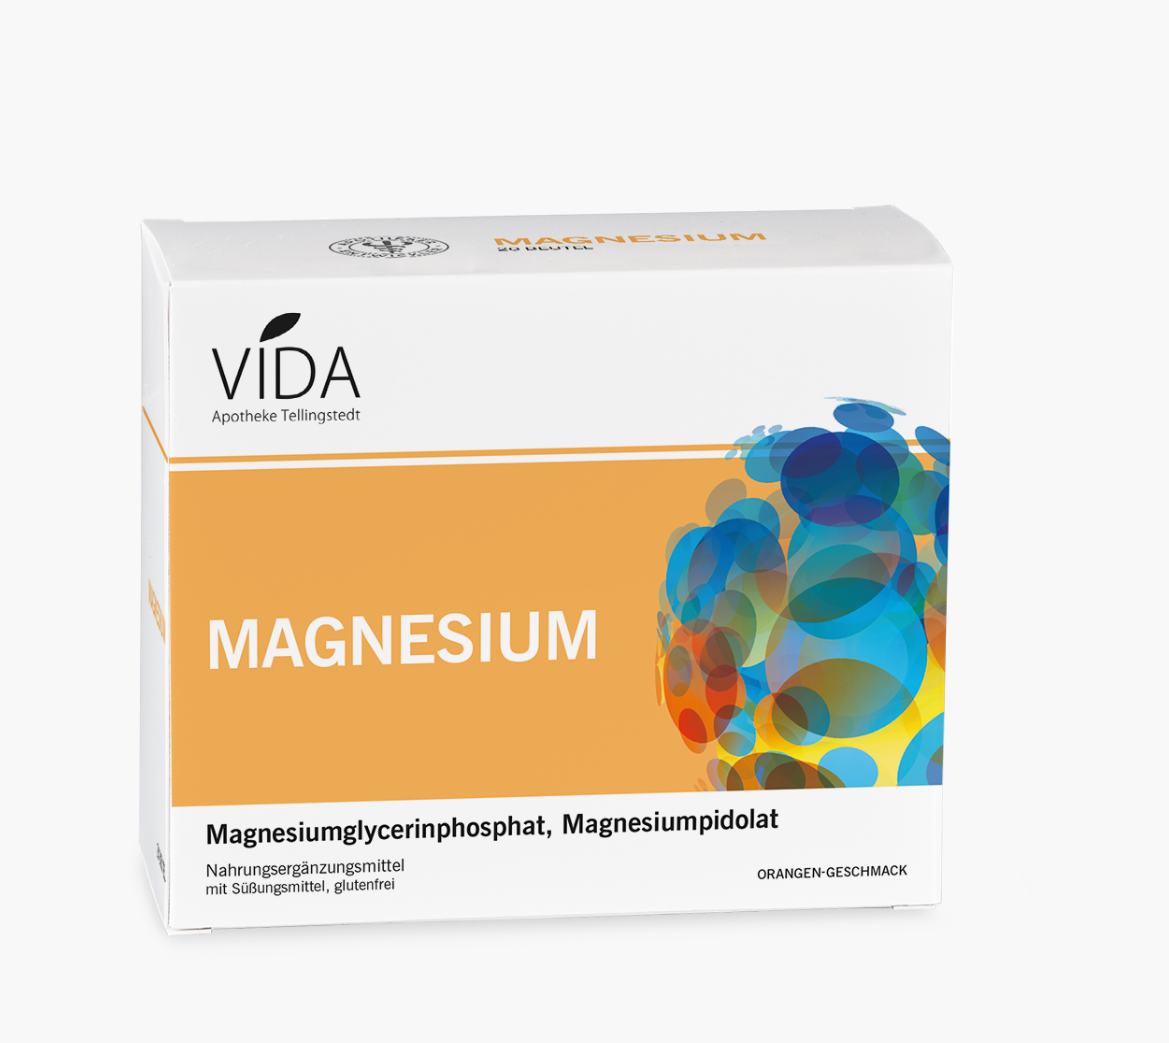 VIDA Magnesium